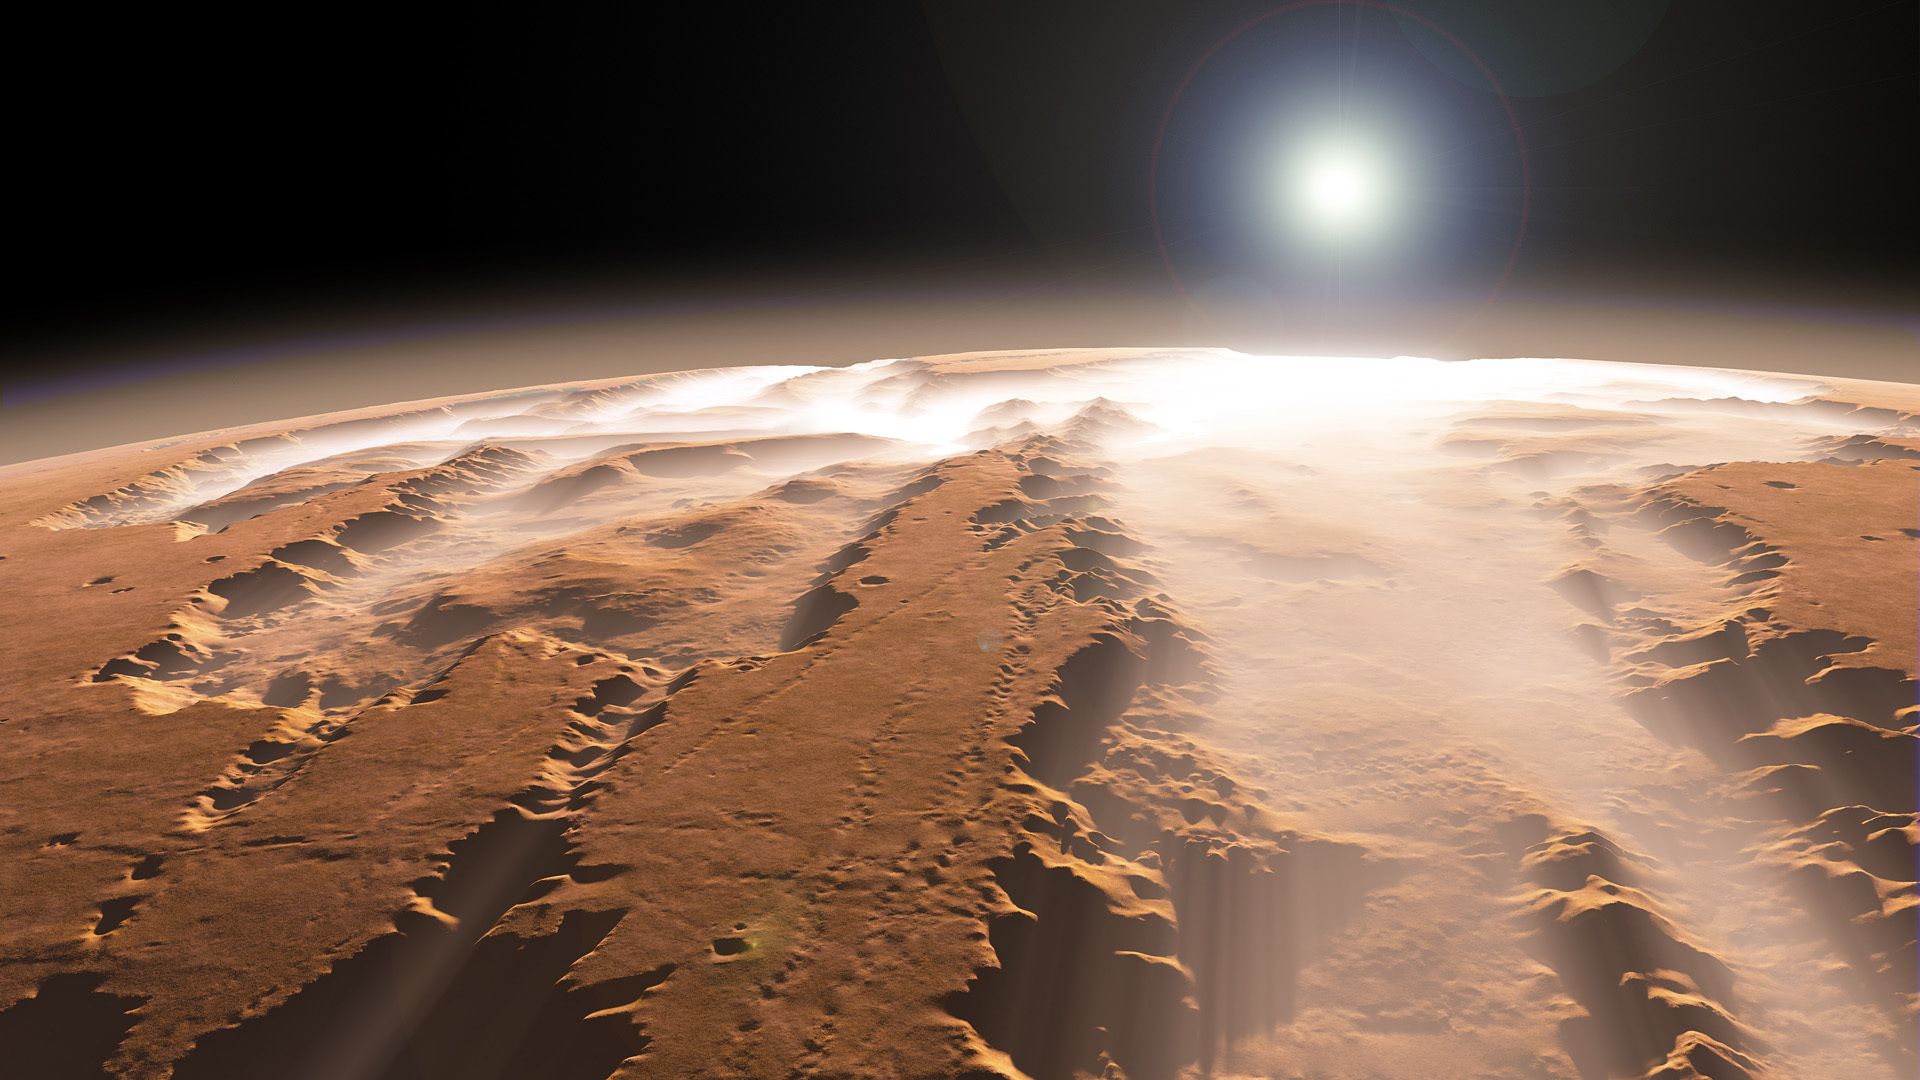 عکس سطح سنگی سیاره مریخ در امتداد نور قمر اطرافش